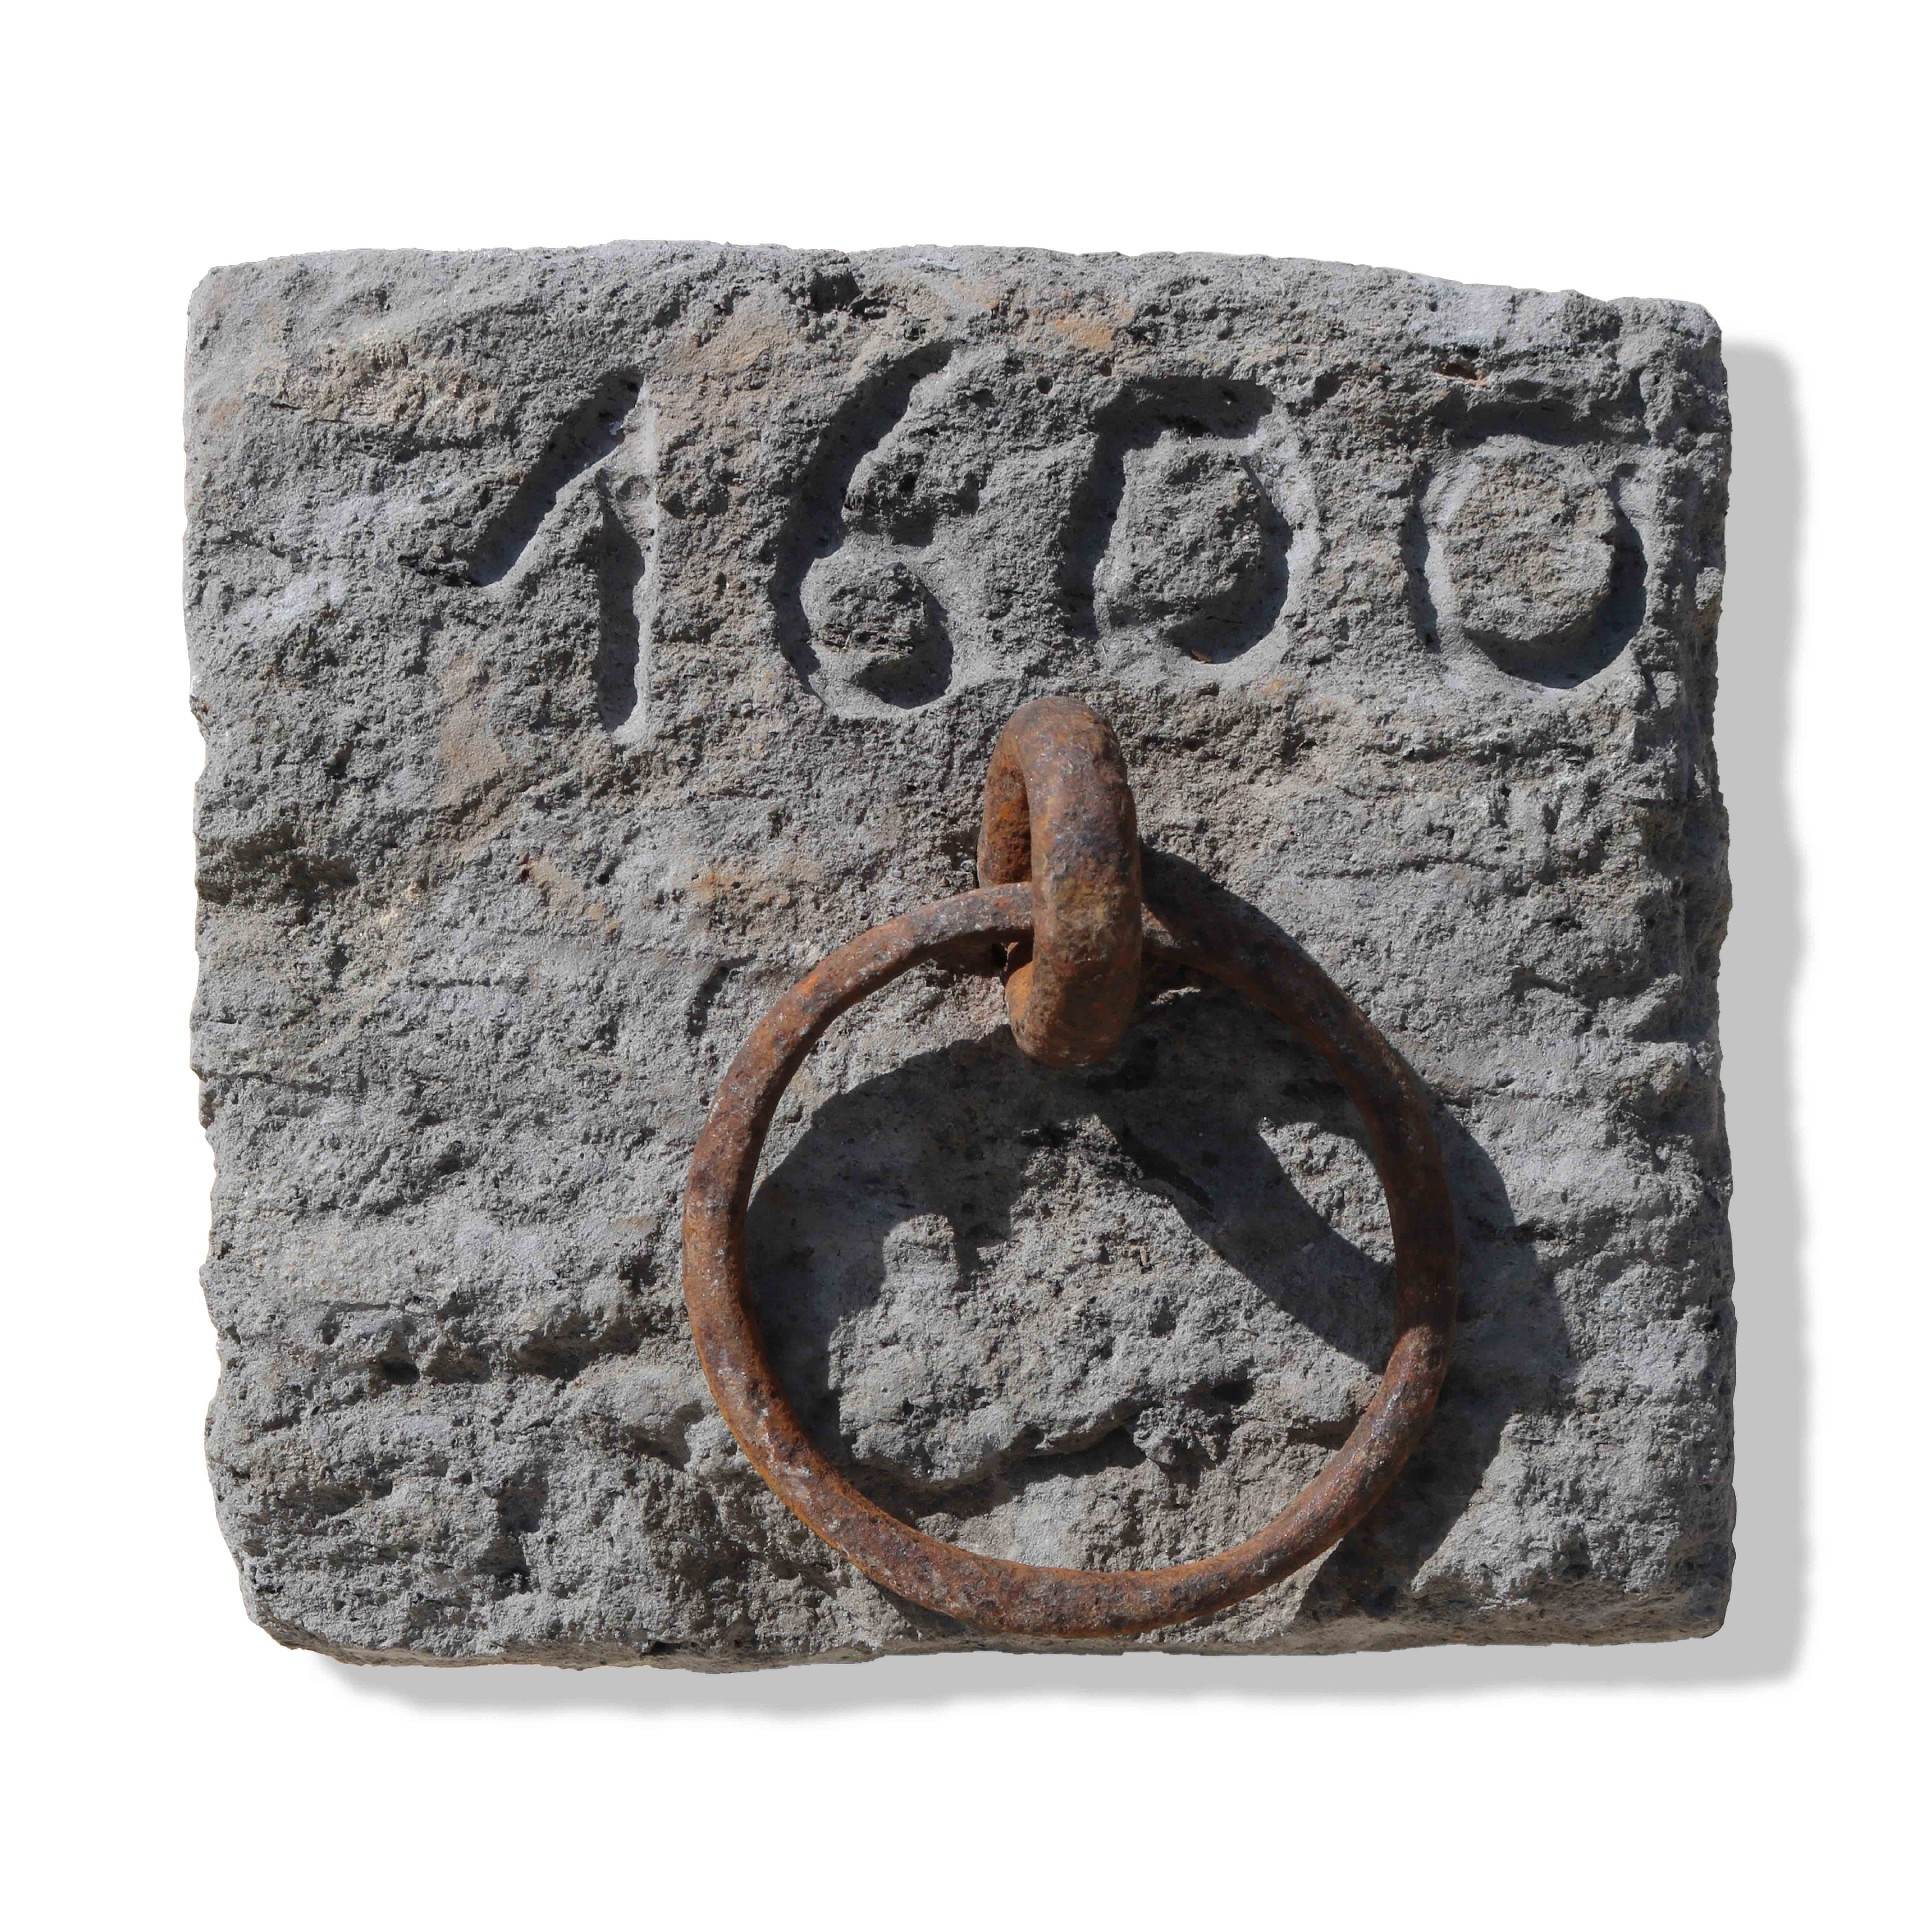 Ferma cavallo antico in pietra datato 1600. - Elementi Architettonici - Architettura - Prodotti - Antichità Fiorillo